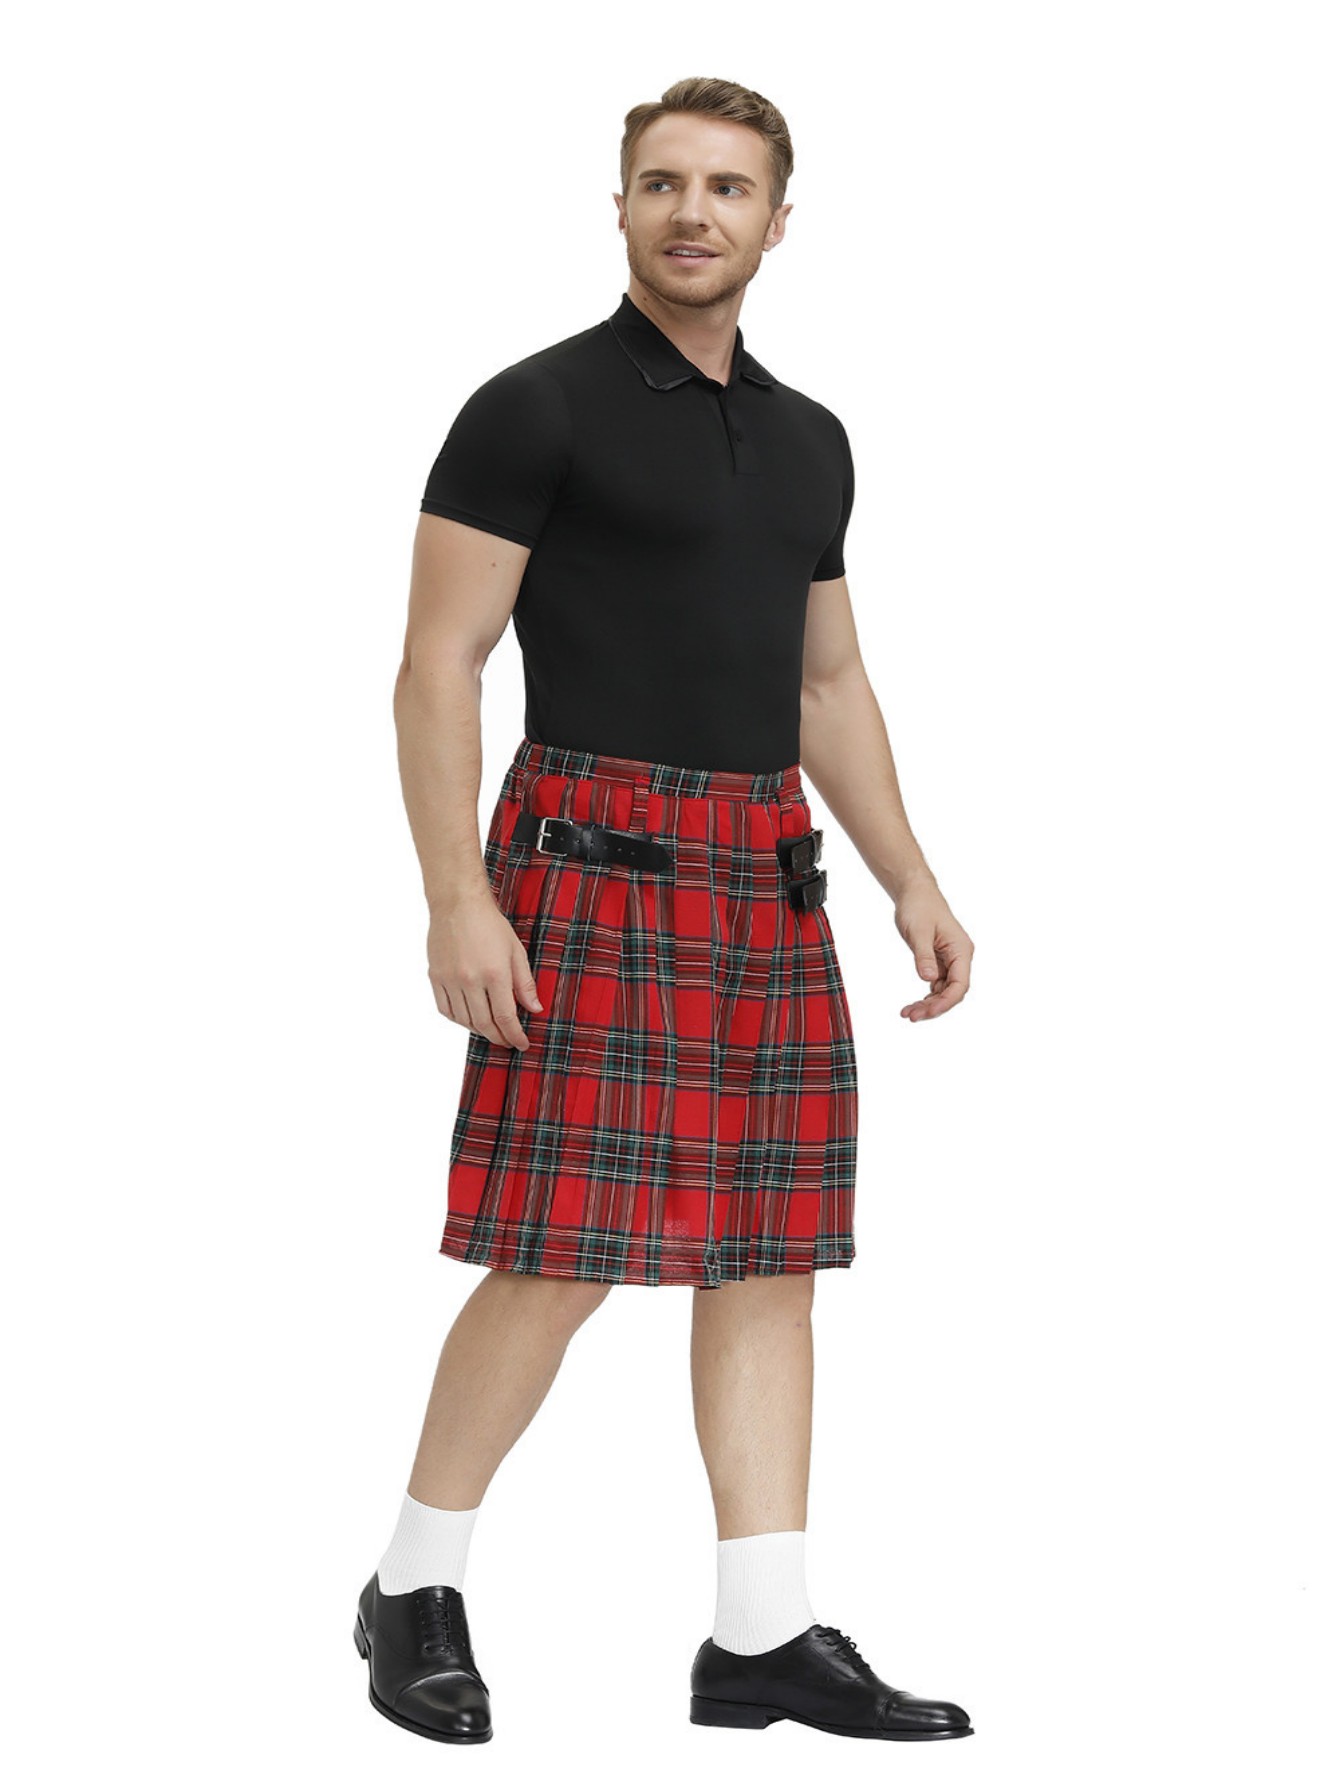 Disfraz de falda escocesa para hombre